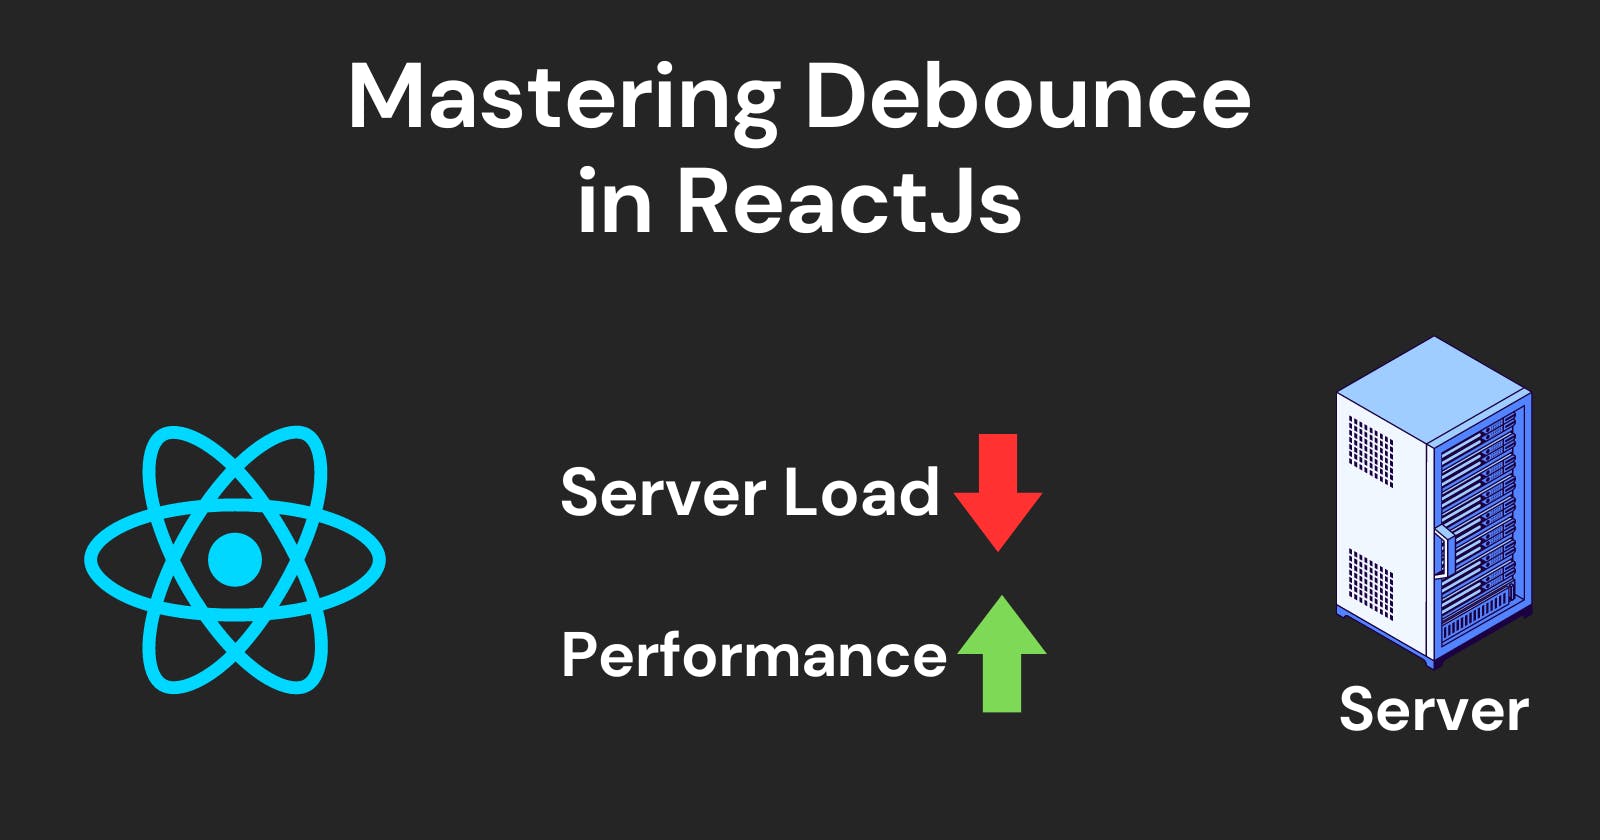 Mastering Debounce in ReactJS